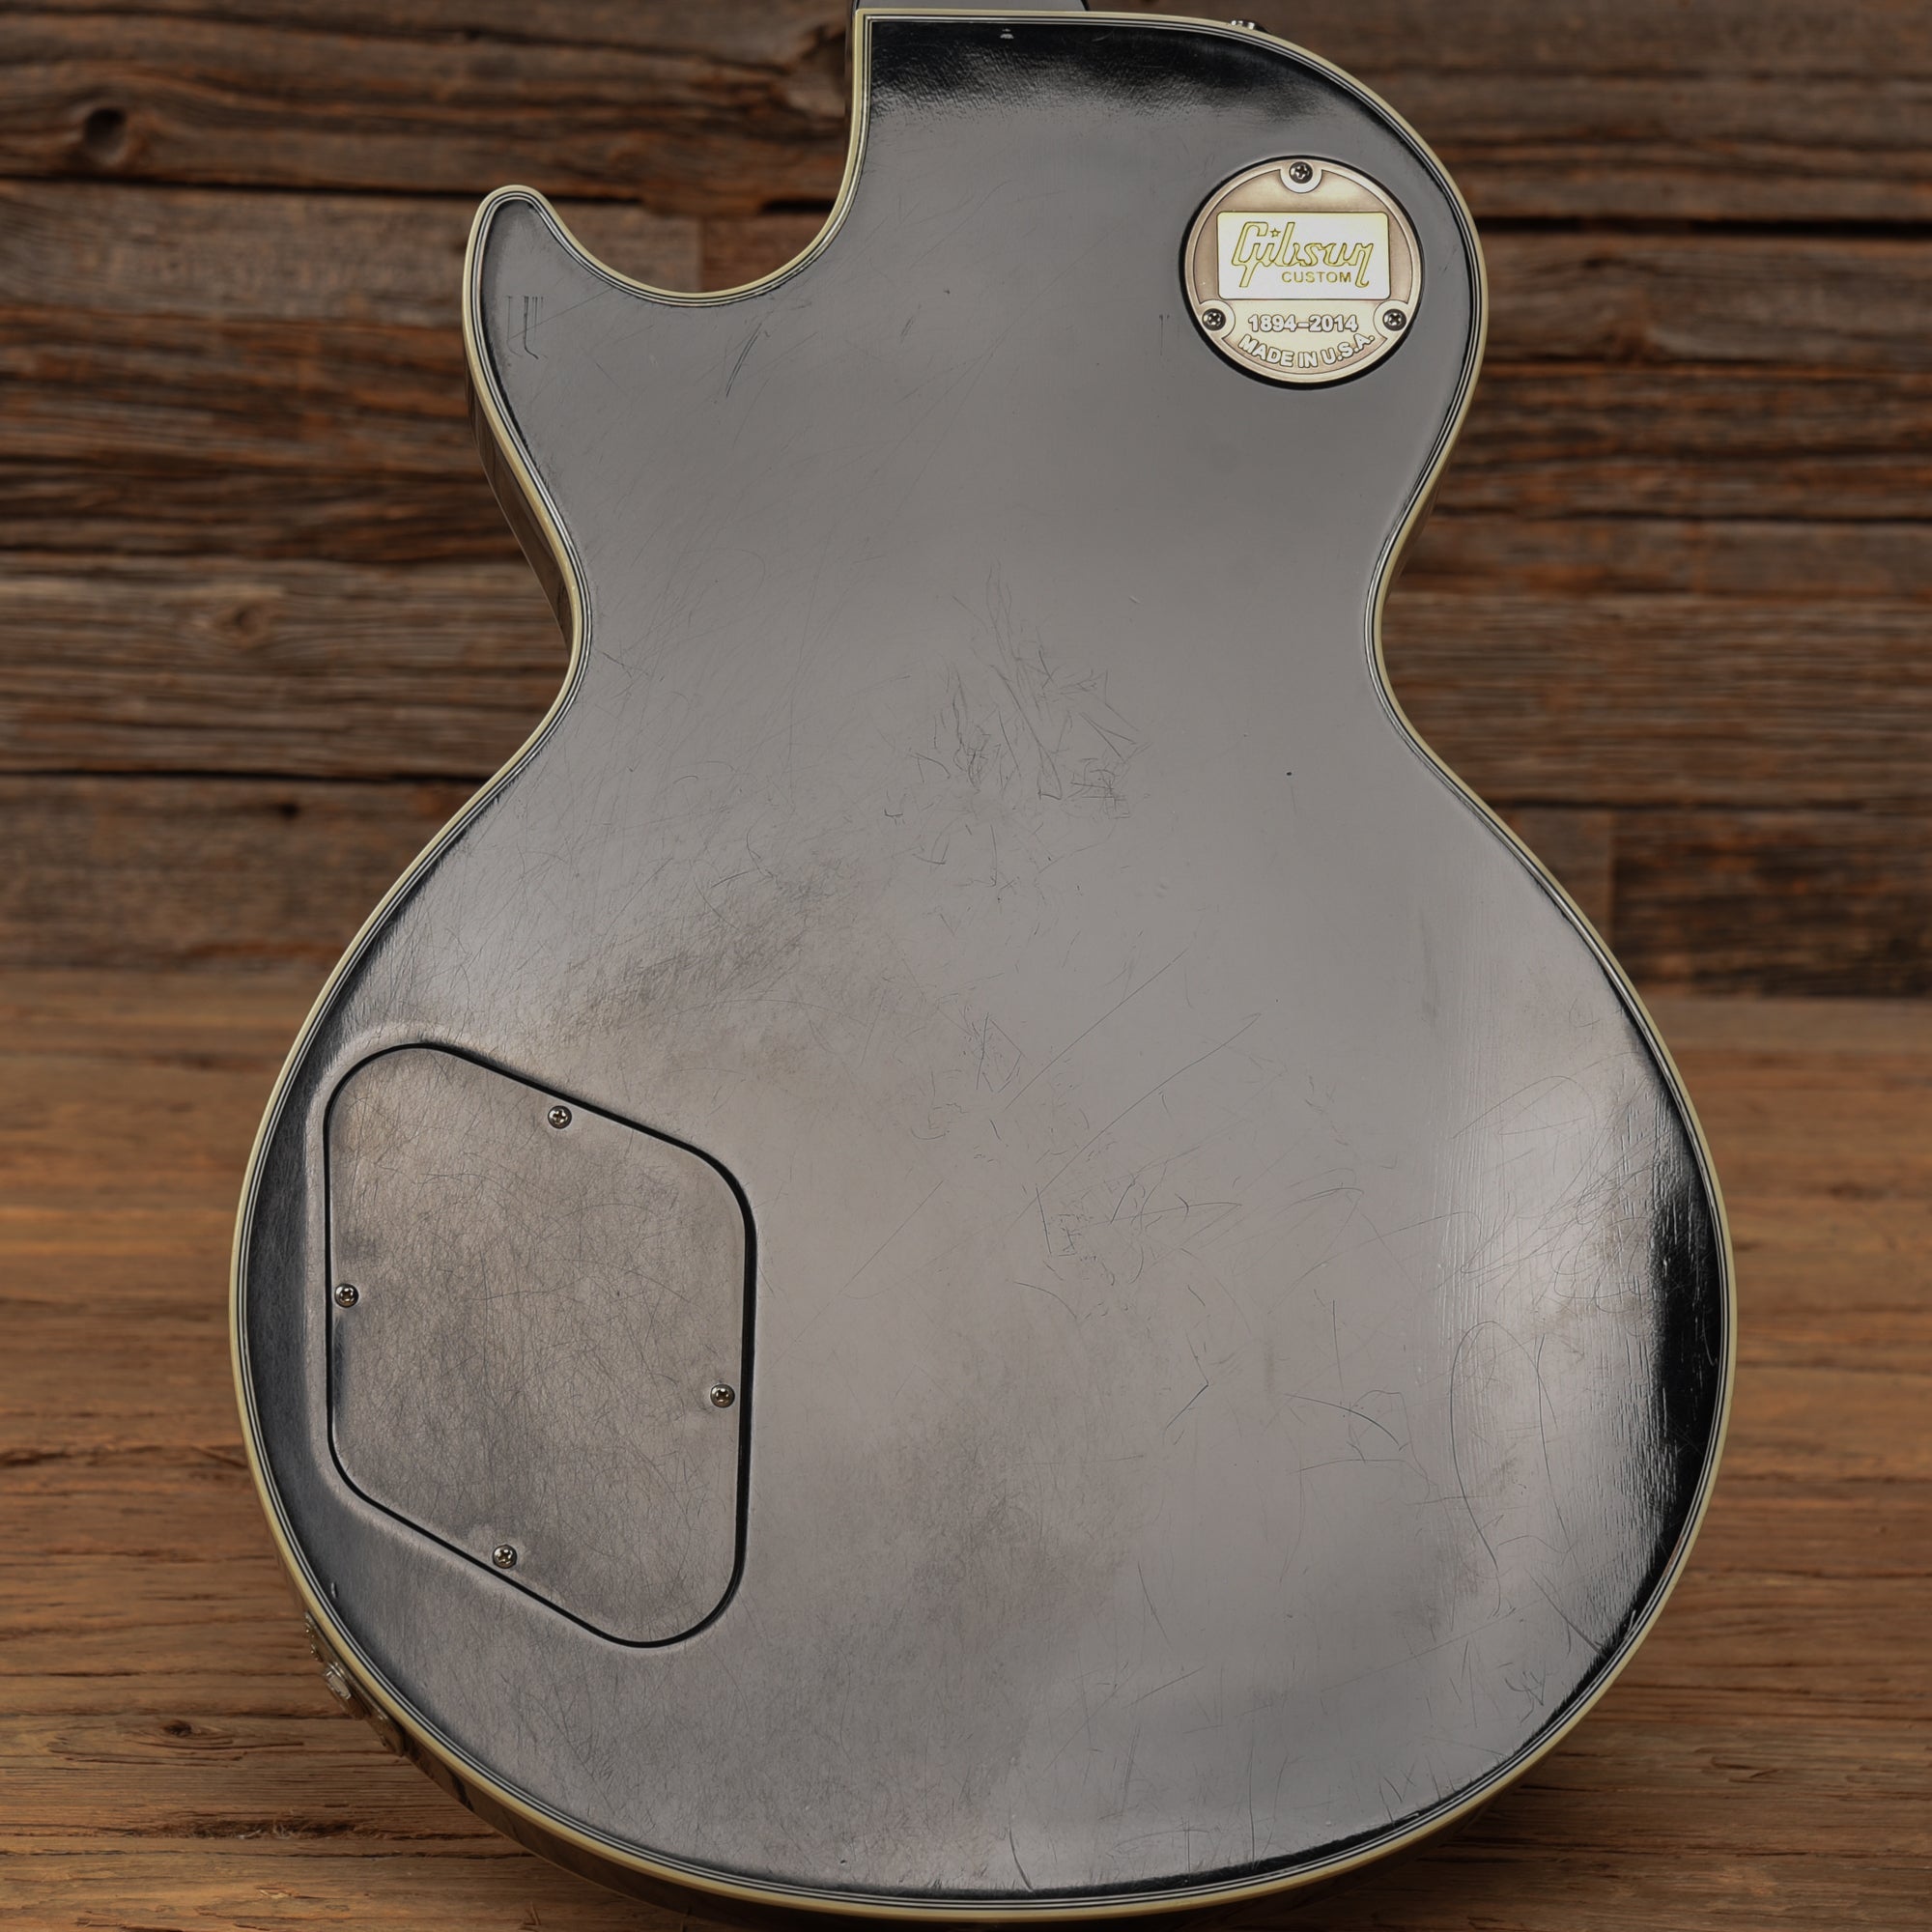 Gibson Custom Les Paul Custom Ebony 2014